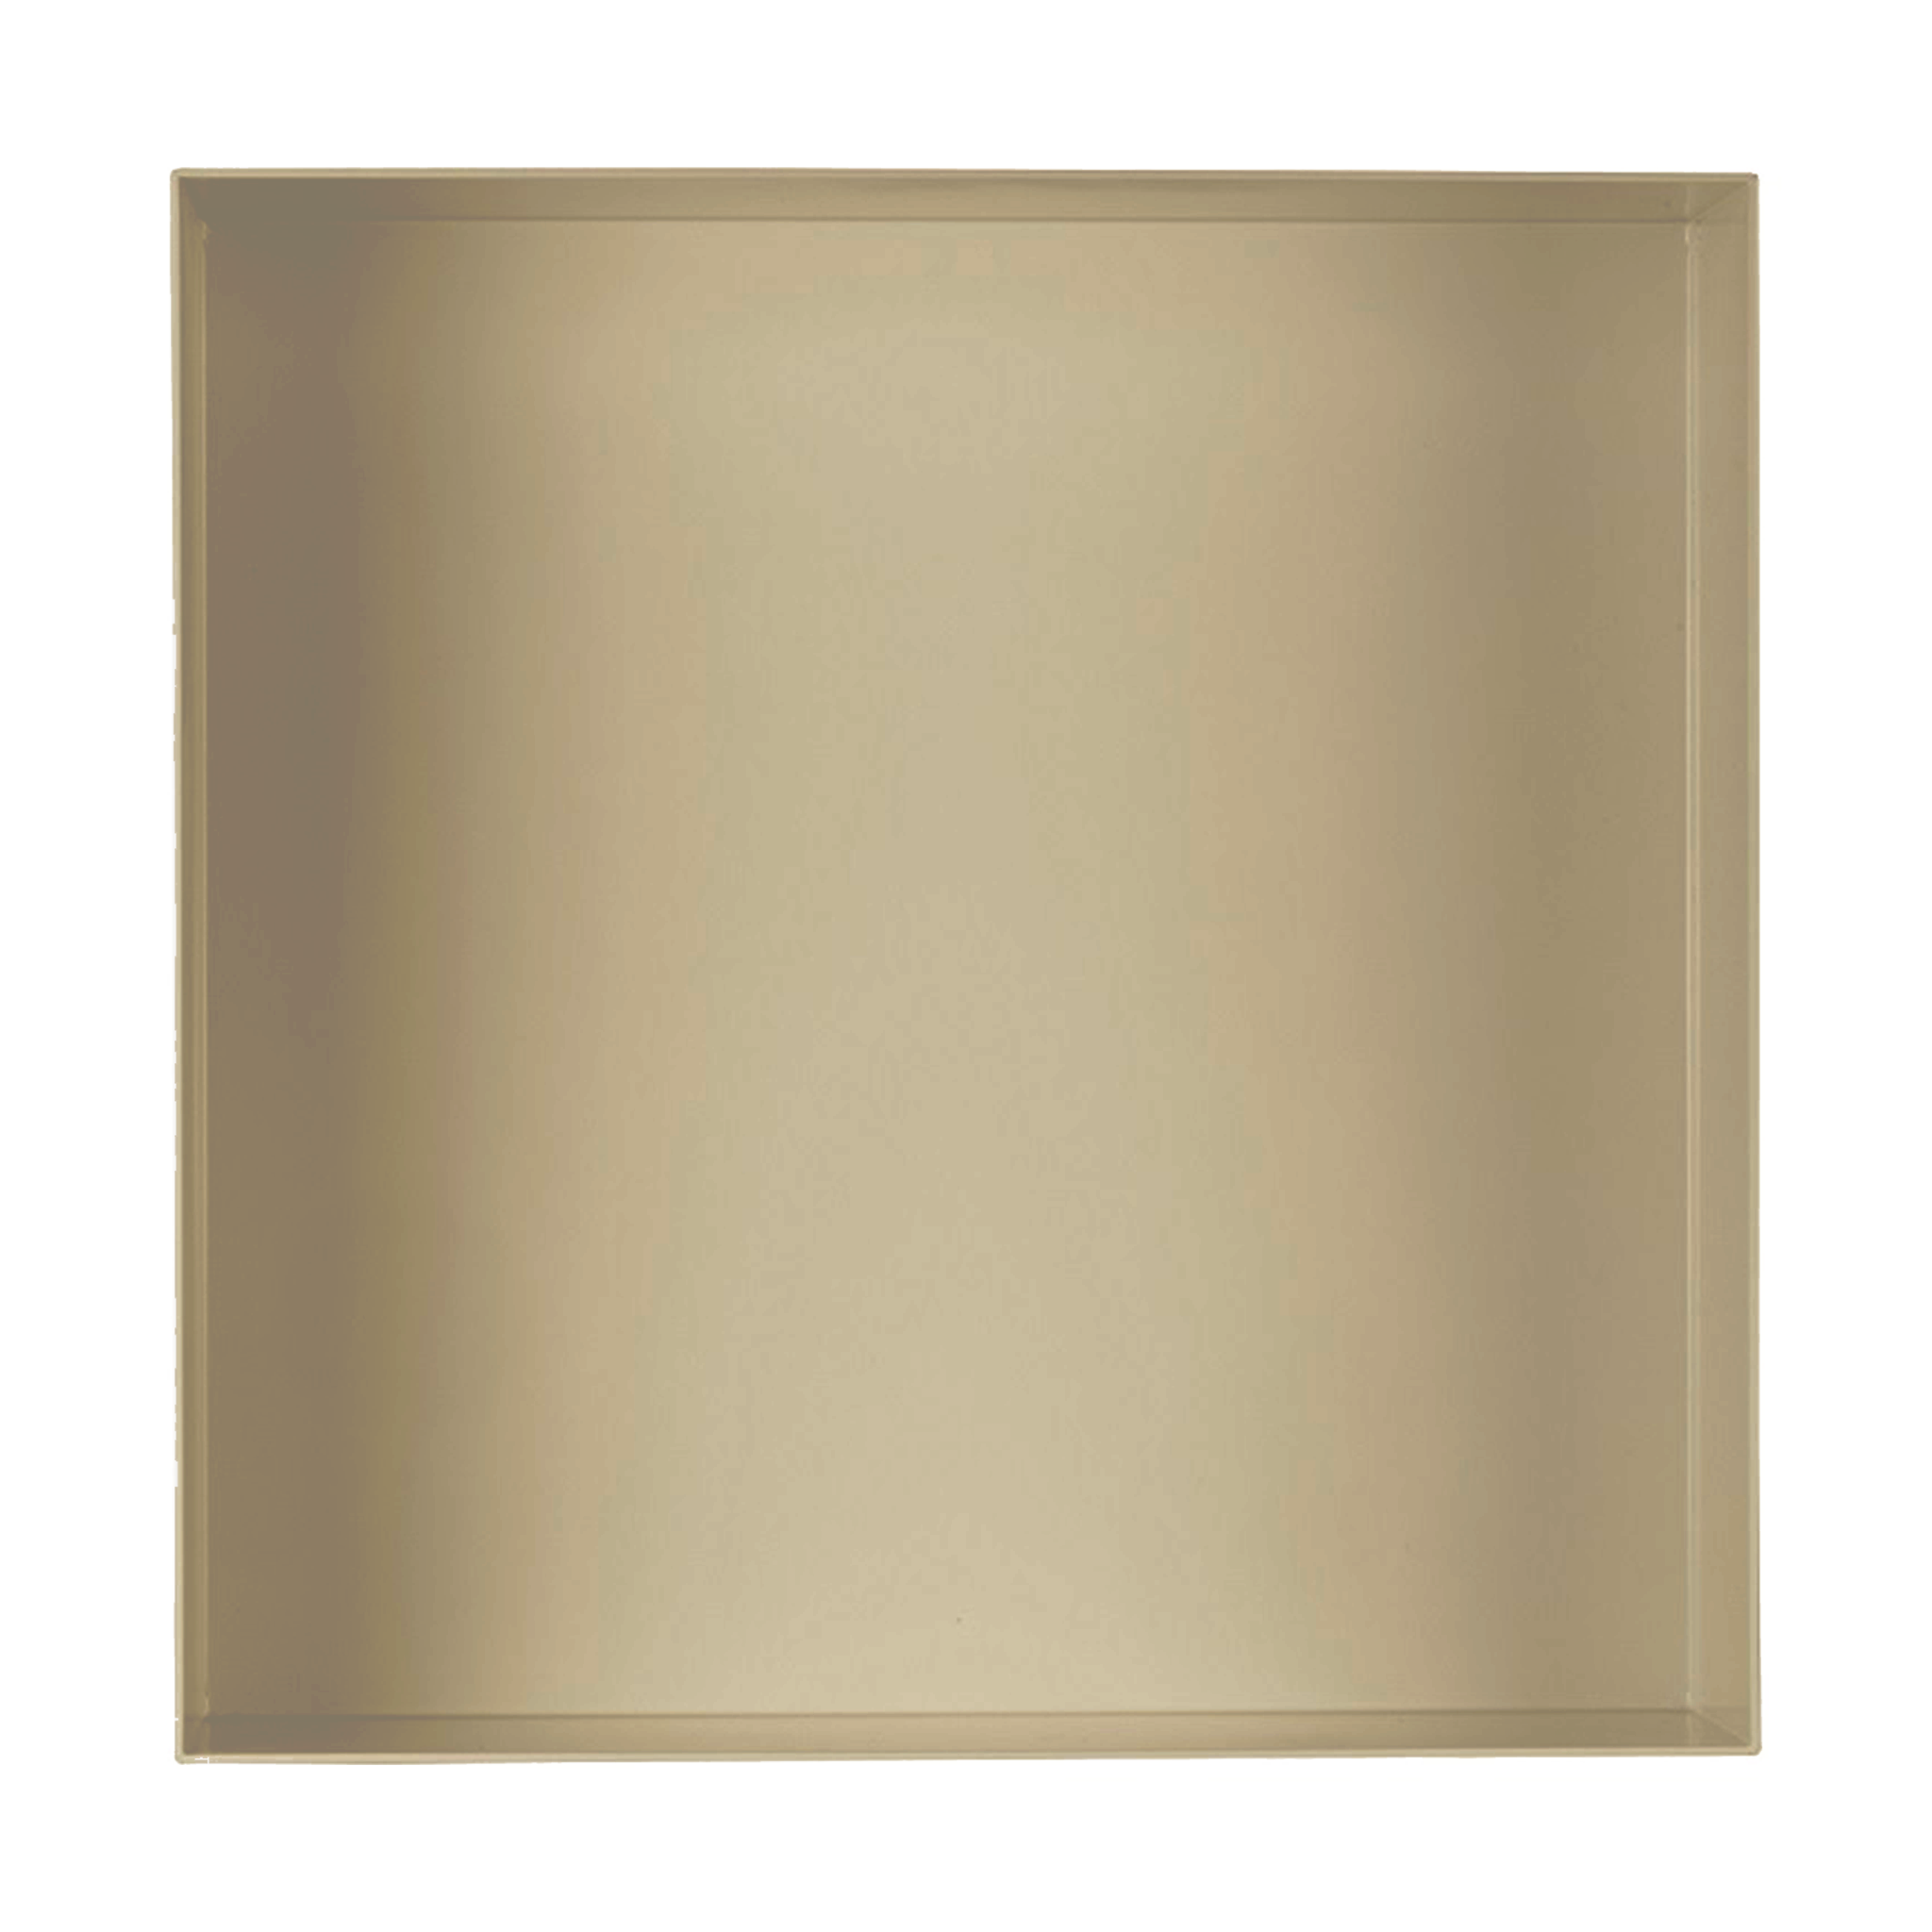 Valli Home – V-Box, Nicchia portaoggetti in Metallo smaltato color Beige KK90, Misura 40X40 P. 10 cm – V-BOX.MLLO.40X40.90